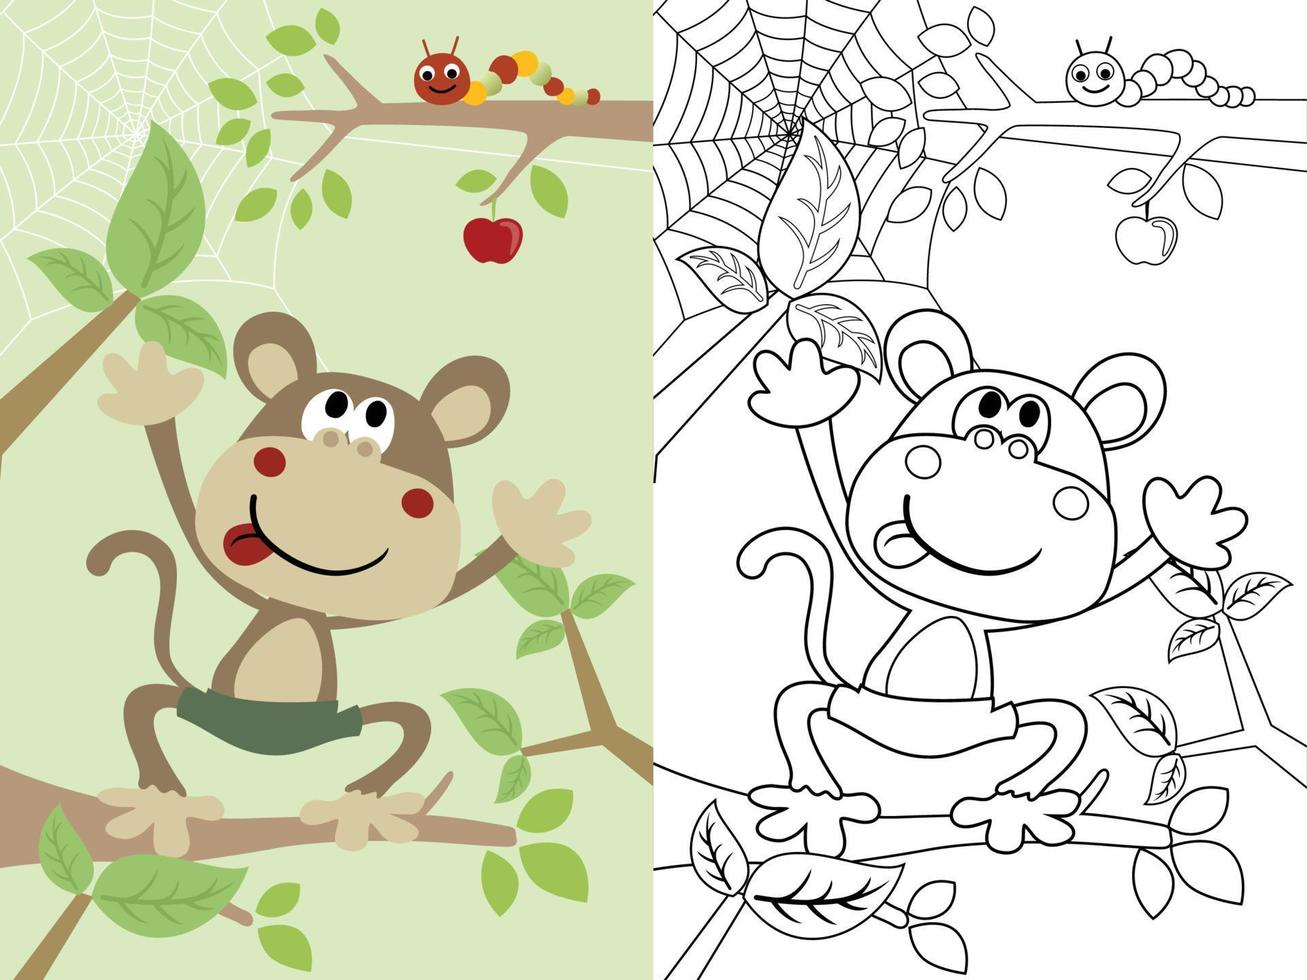 ilustración vectorial de dibujos animados divertidos de monos en un árbol con oruga, libro de colorear o página vector